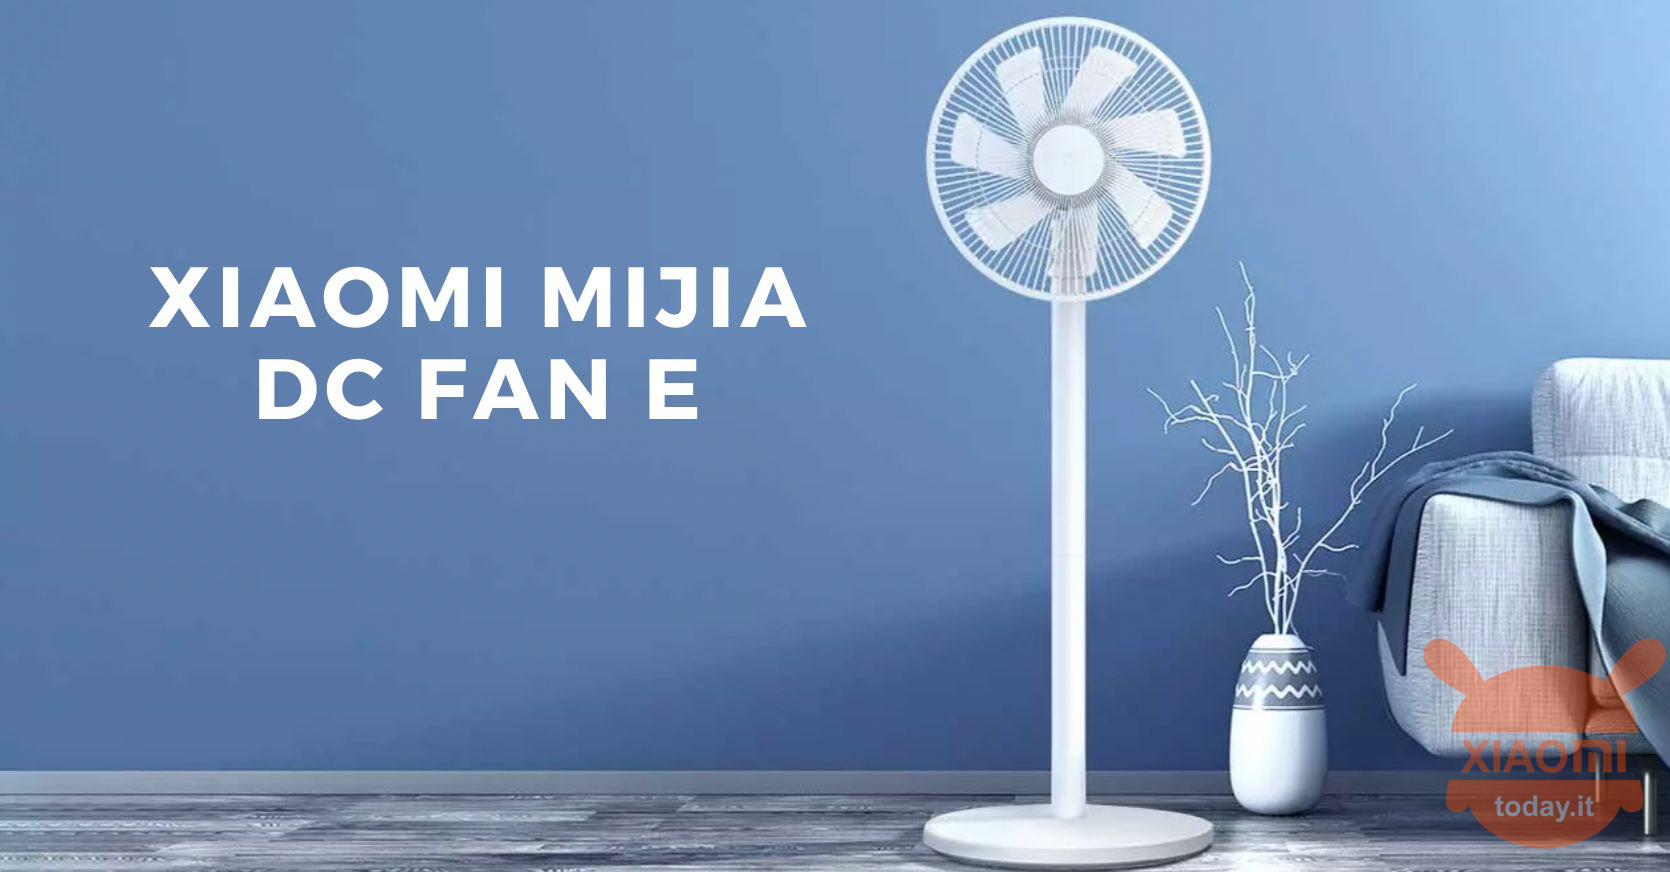 xiaomi mijia dc fan e: smart fan für 30 €